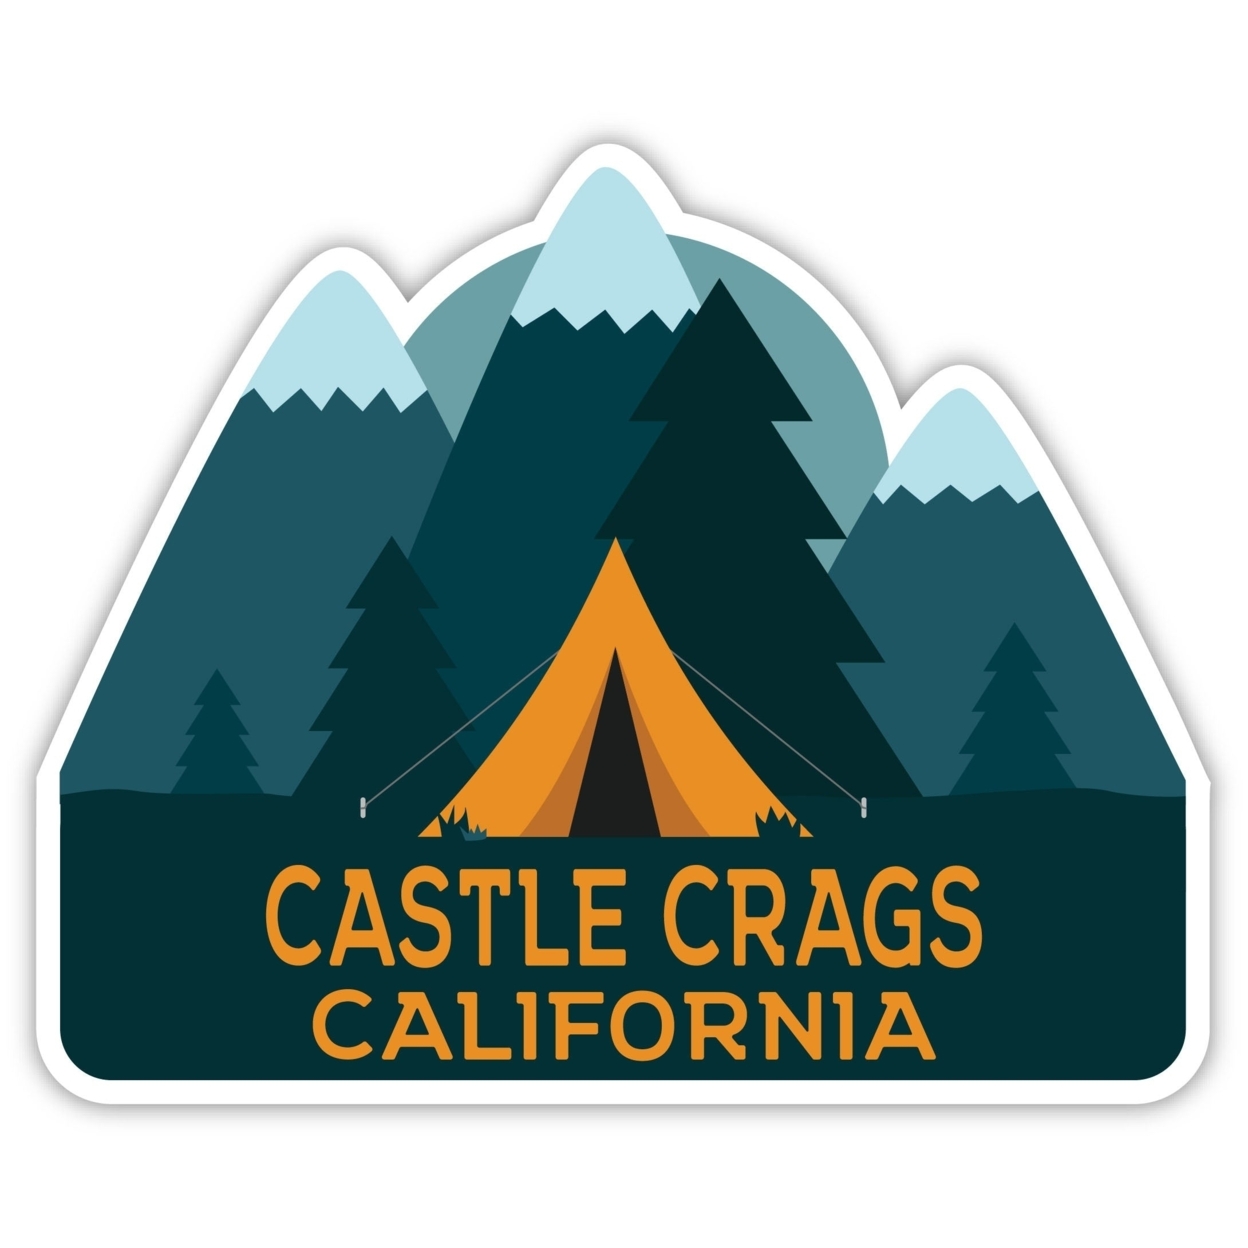 Castle Crags California Souvenir Decorative Stickers (Choose Theme And Size) - Single Unit, 4-Inch, Tent